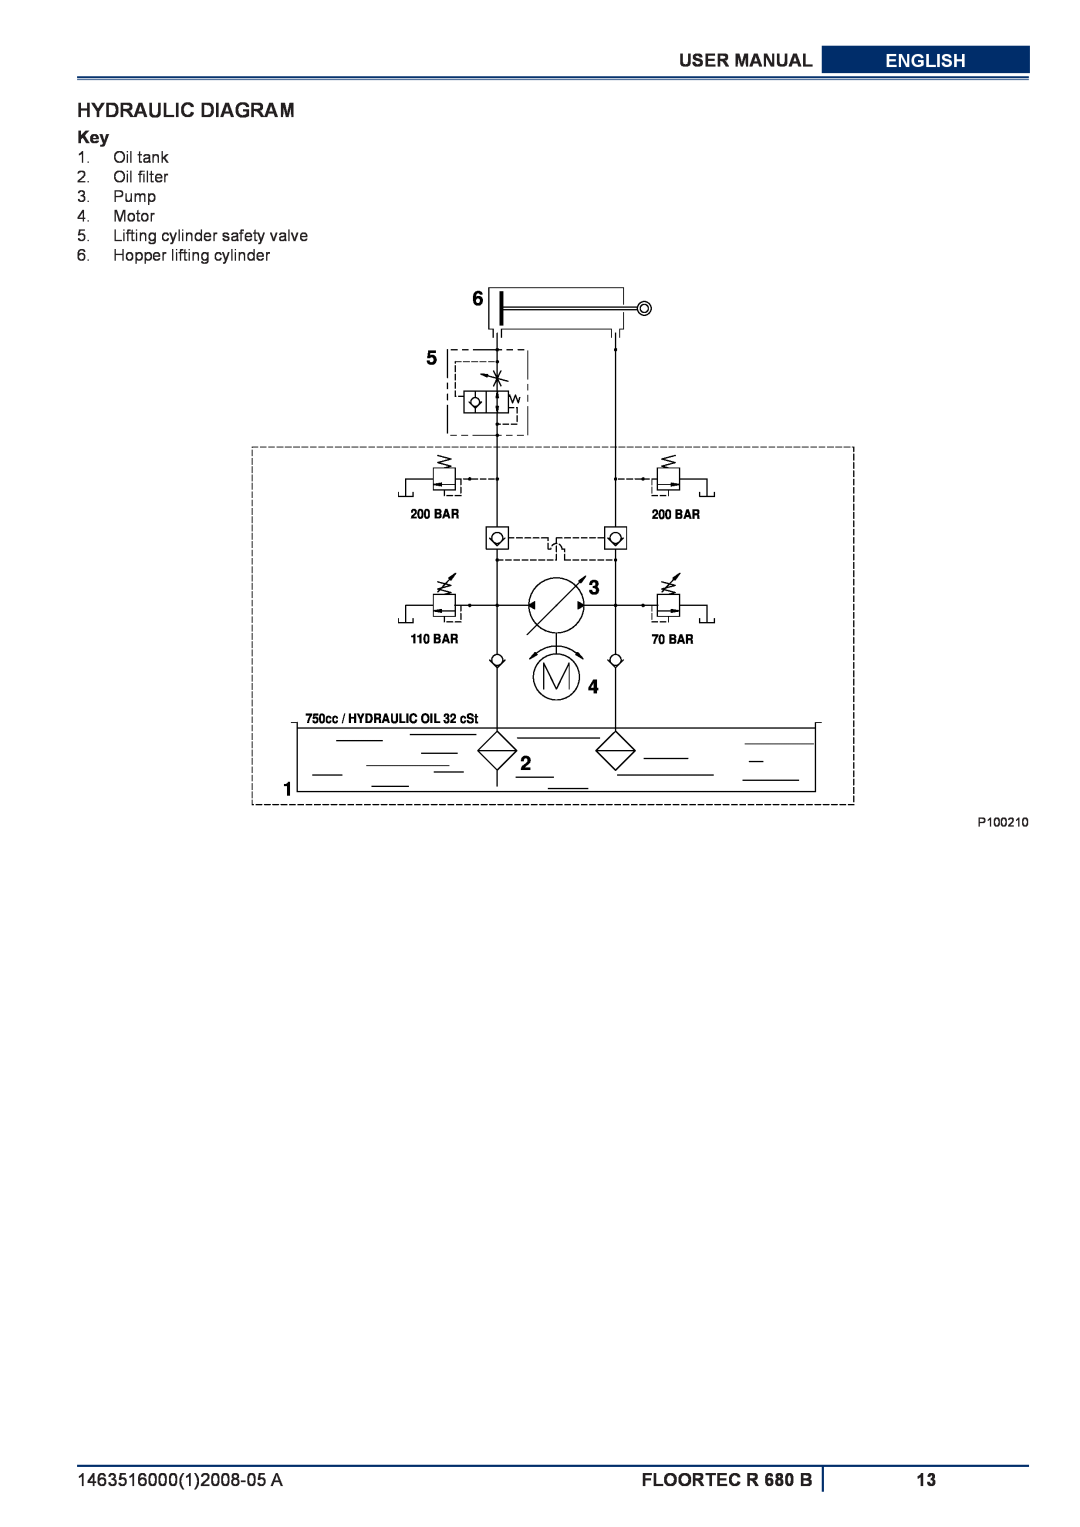 Nilfisk-ALTO manuel dutilisation Hydraulic Diagram, User Manual, English, FLOORTEC R 680 B, 200 BAR, 110 BAR, 70 BAR 